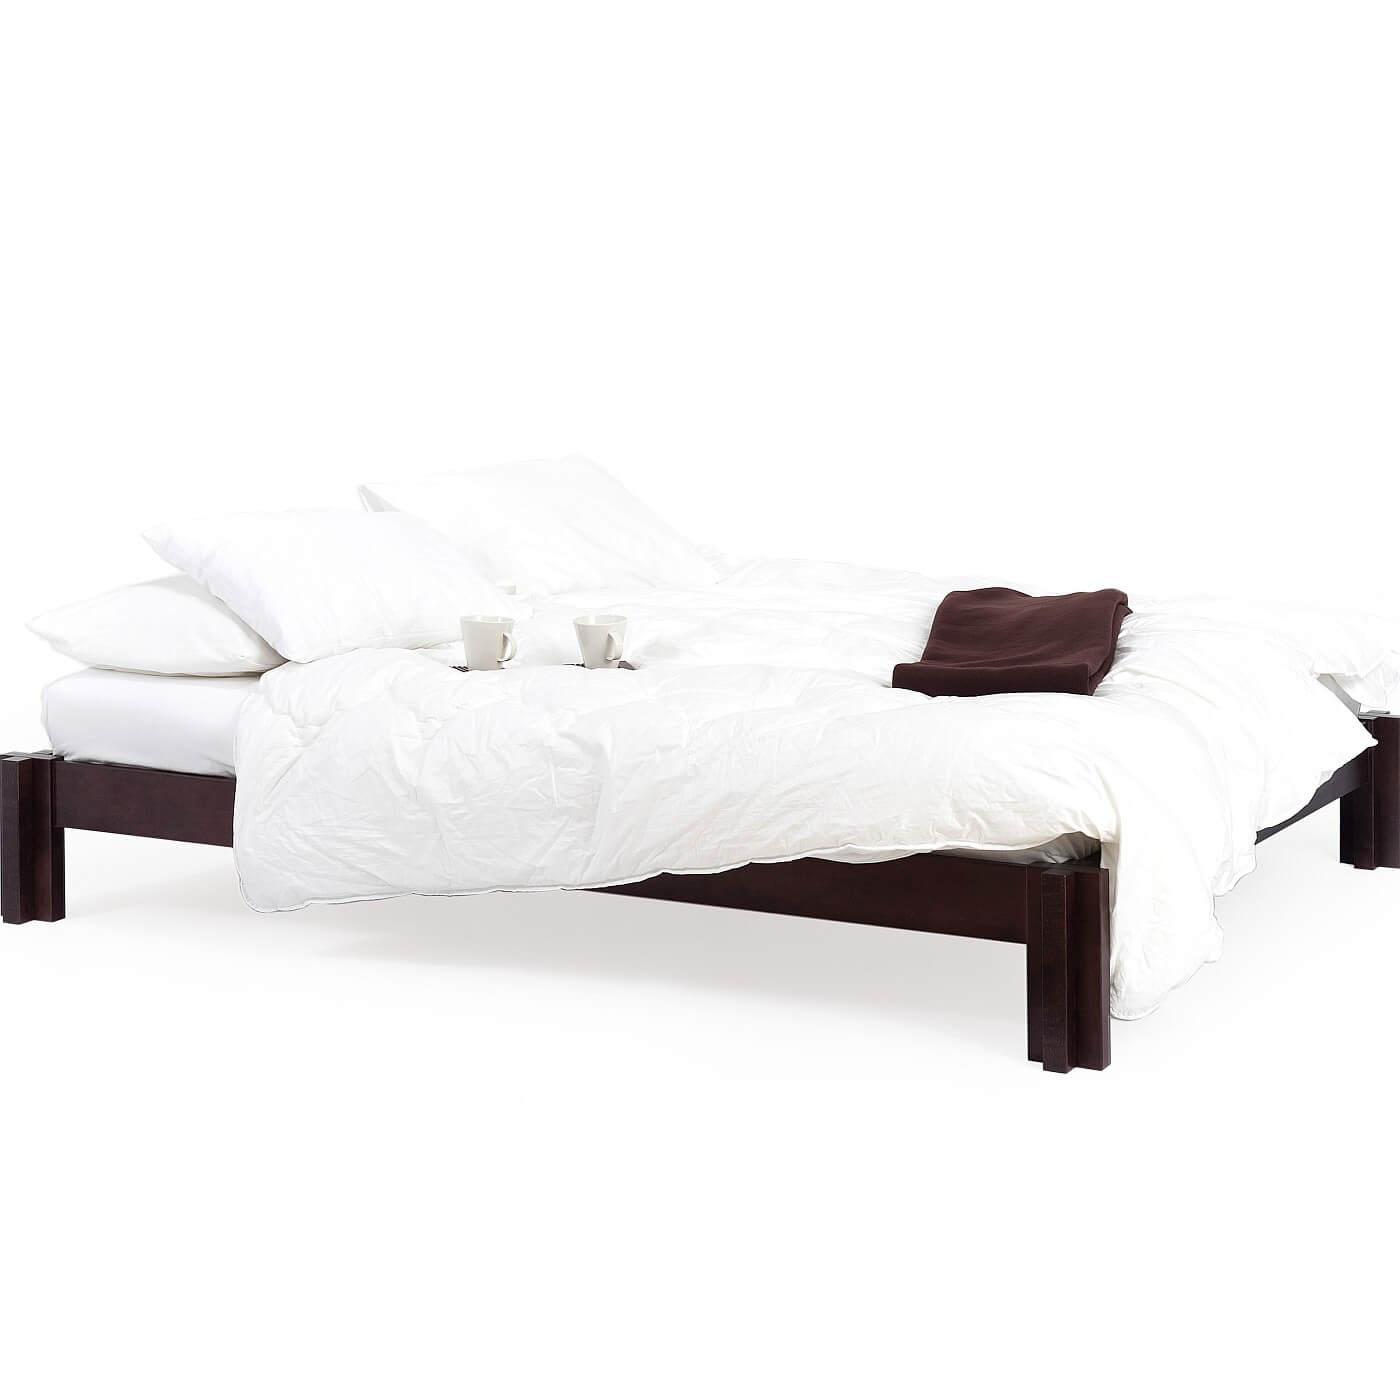 Niskie łóżko wenge MORI 180x200 widoczne w całości. Na łóżku z drewna w kolorze wenge leży materac, biała kołdra, poduszki, brązowy koc i 2 białe kubki. Nowoczesny skandynawski design